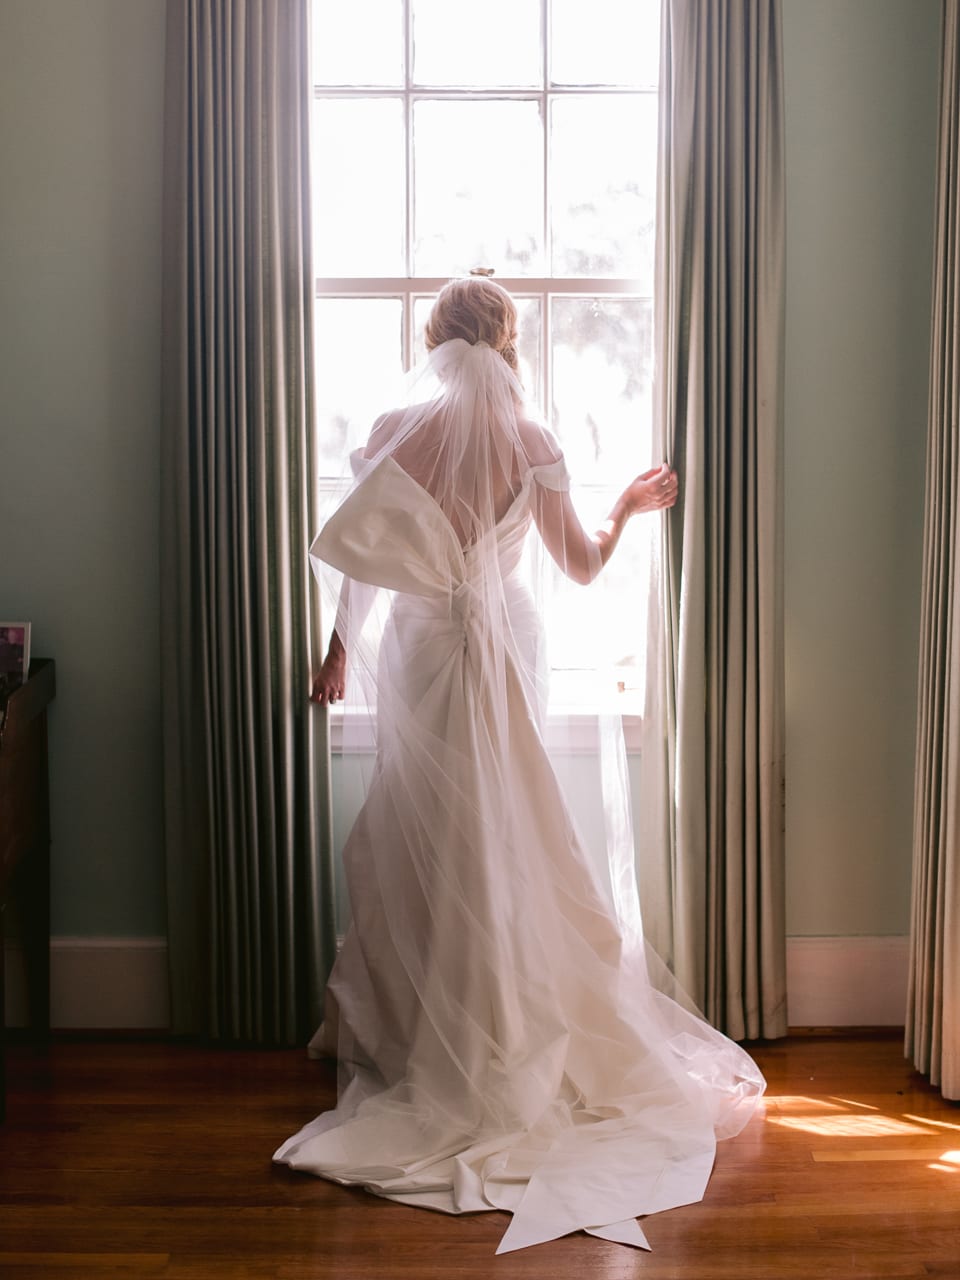 Hobcaw Barony Wedding Photographer - South Carolina Wedding Photographers